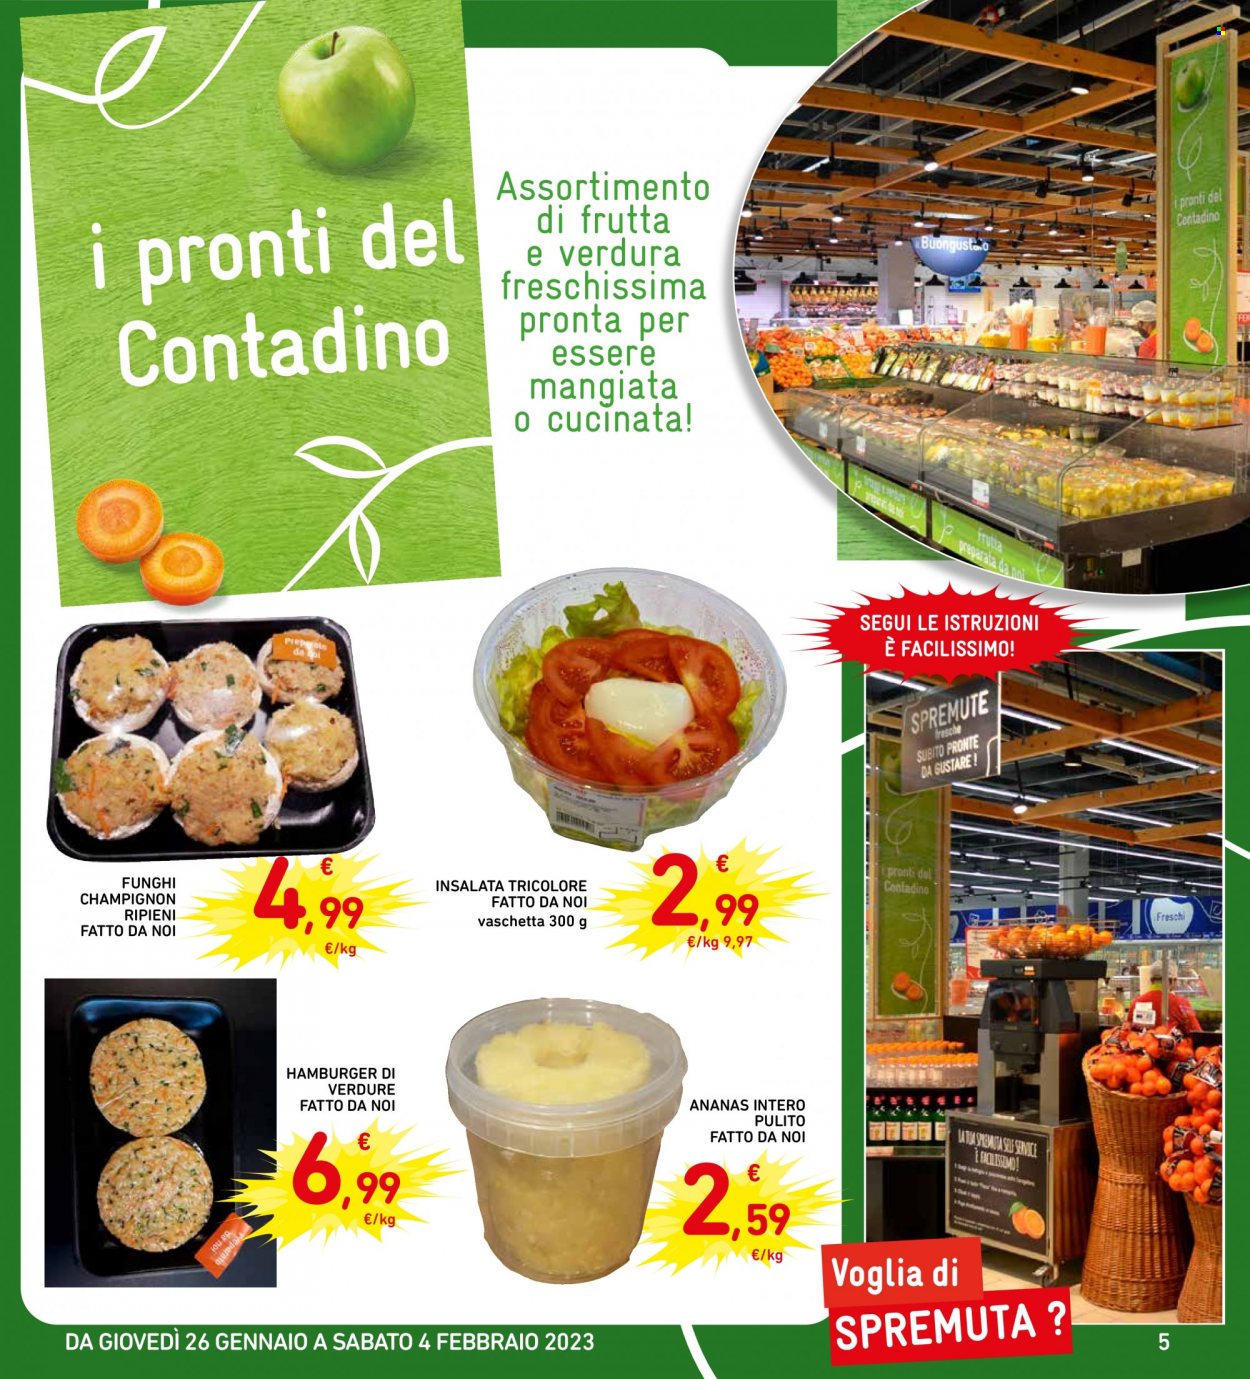 thumbnail - Volantino Conad - 26/1/2023 - 4/2/2023 - Prodotti in offerta - funghi champignon, hamburger, spremuta. Pagina 5.